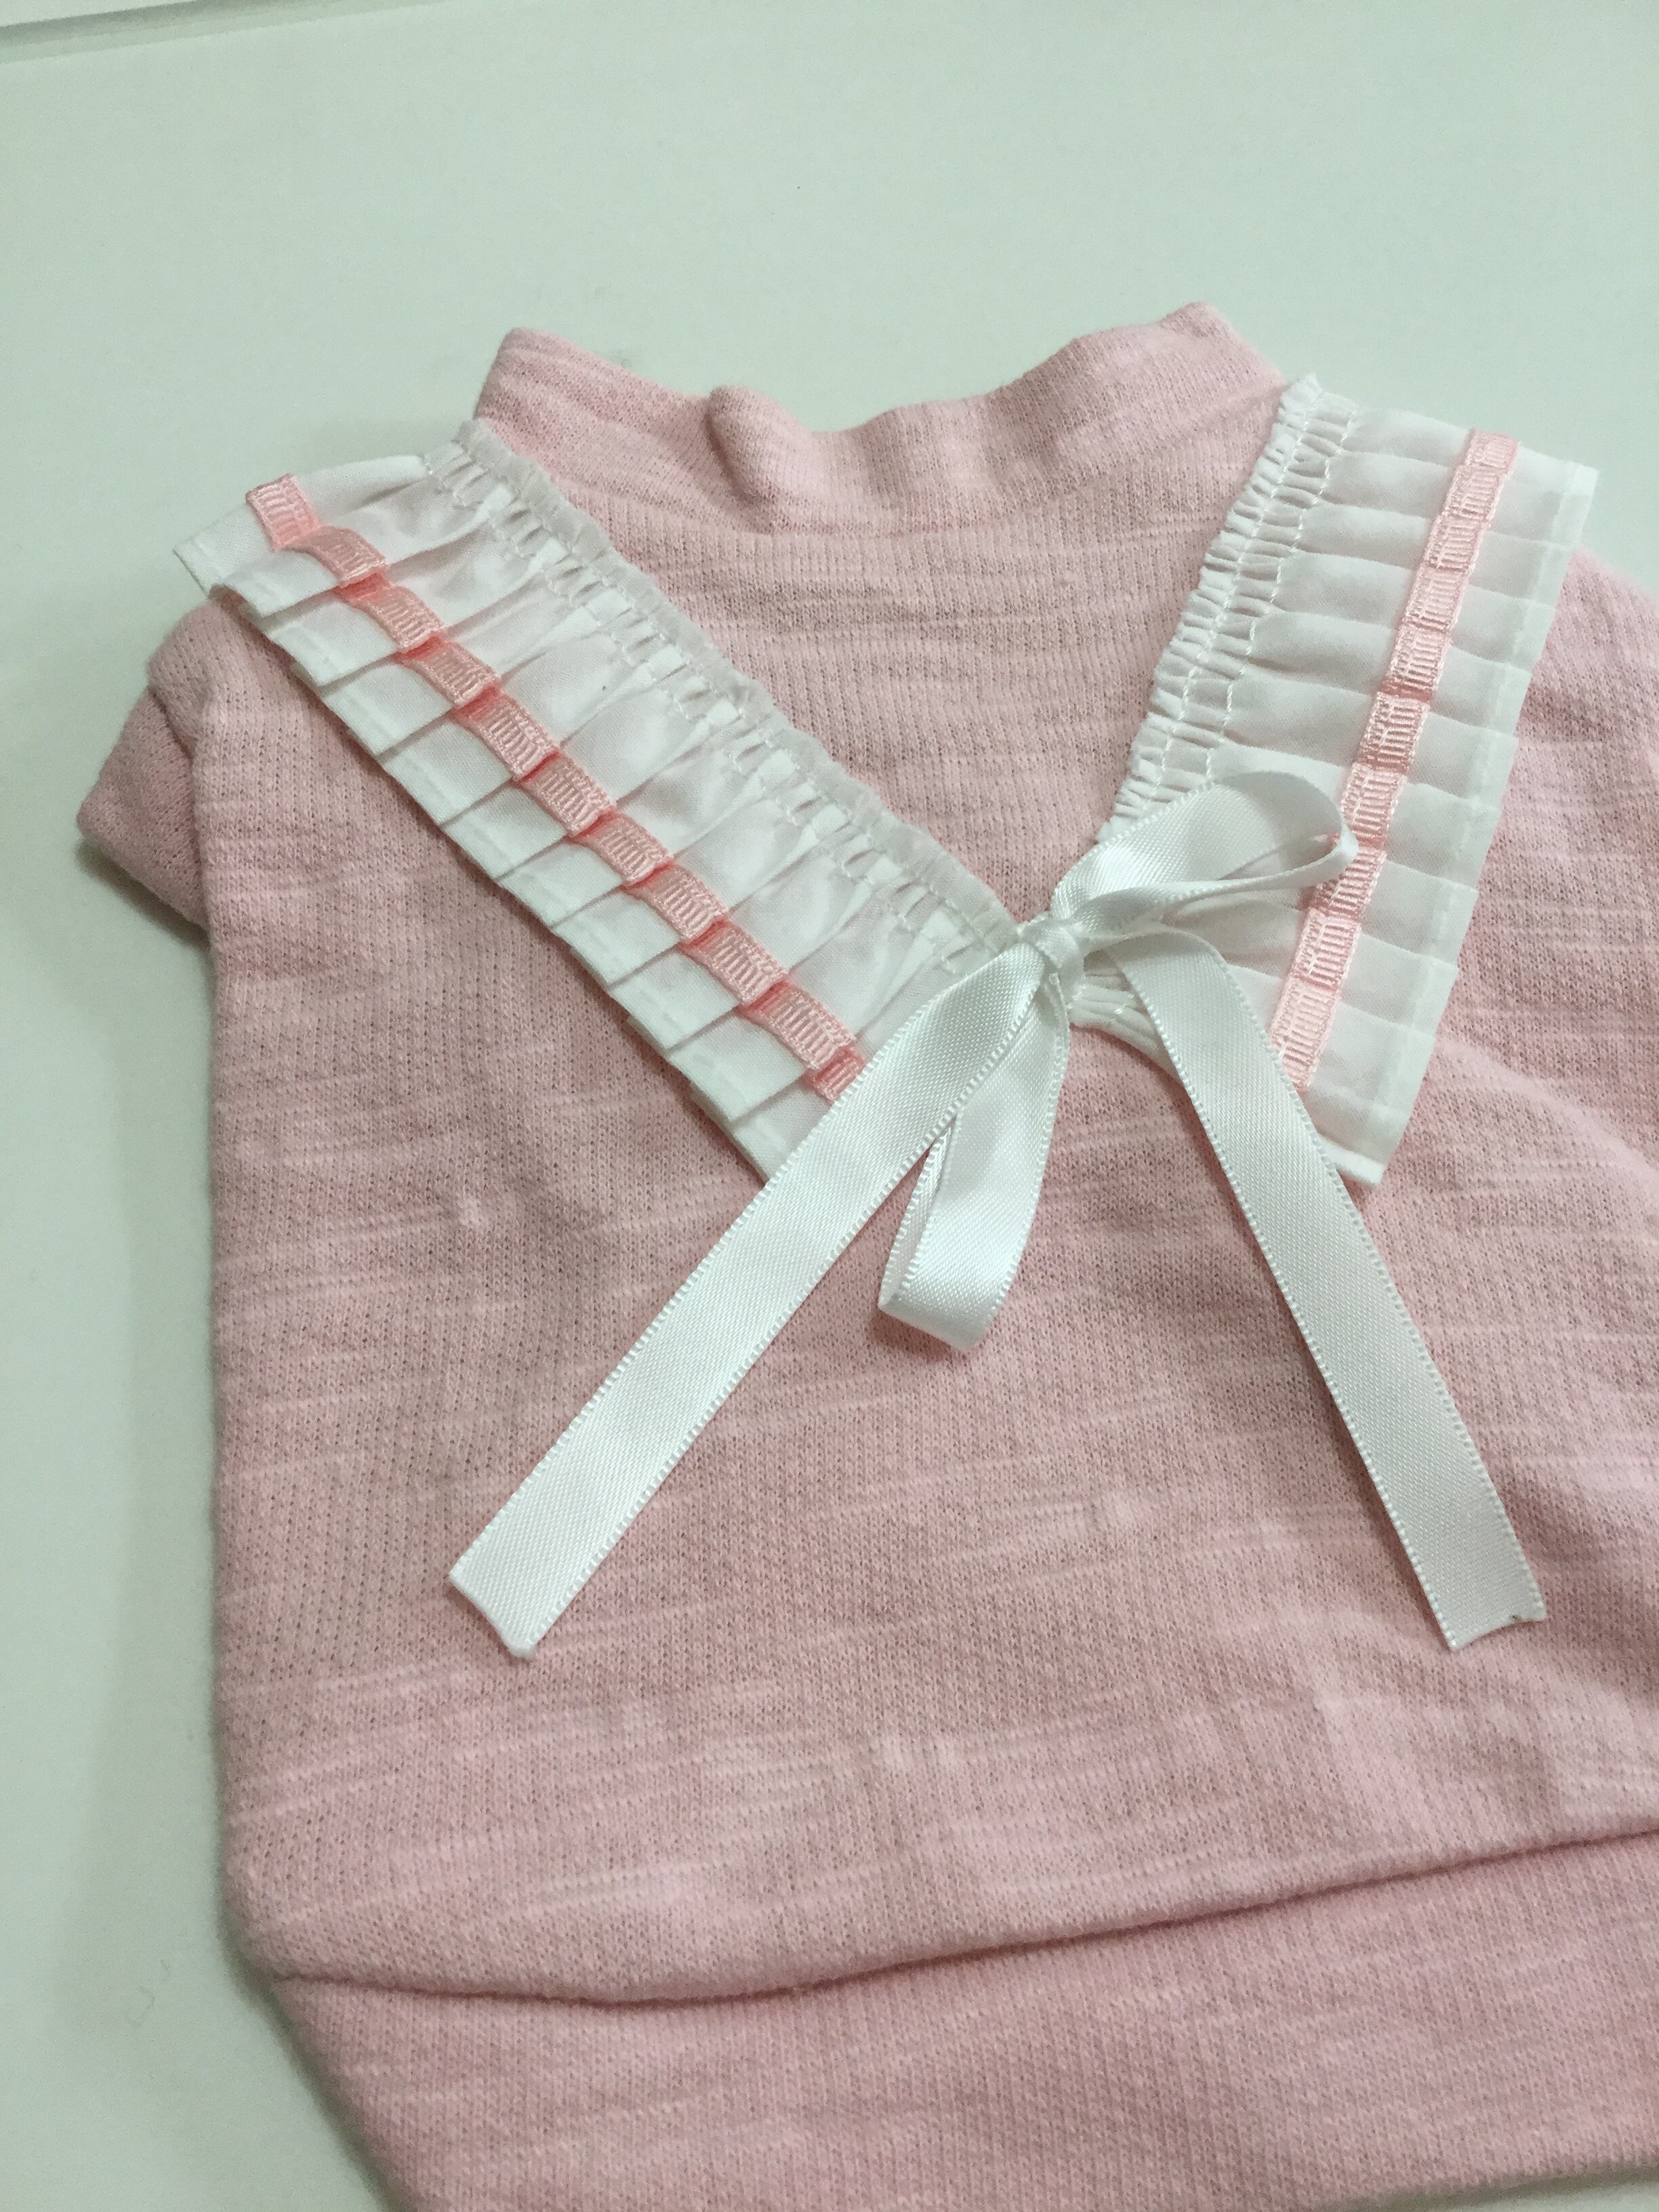 ３。犬 服 韓国 Tシャツ ネイビー ピンク 袖あり セーラー風 春 夏物